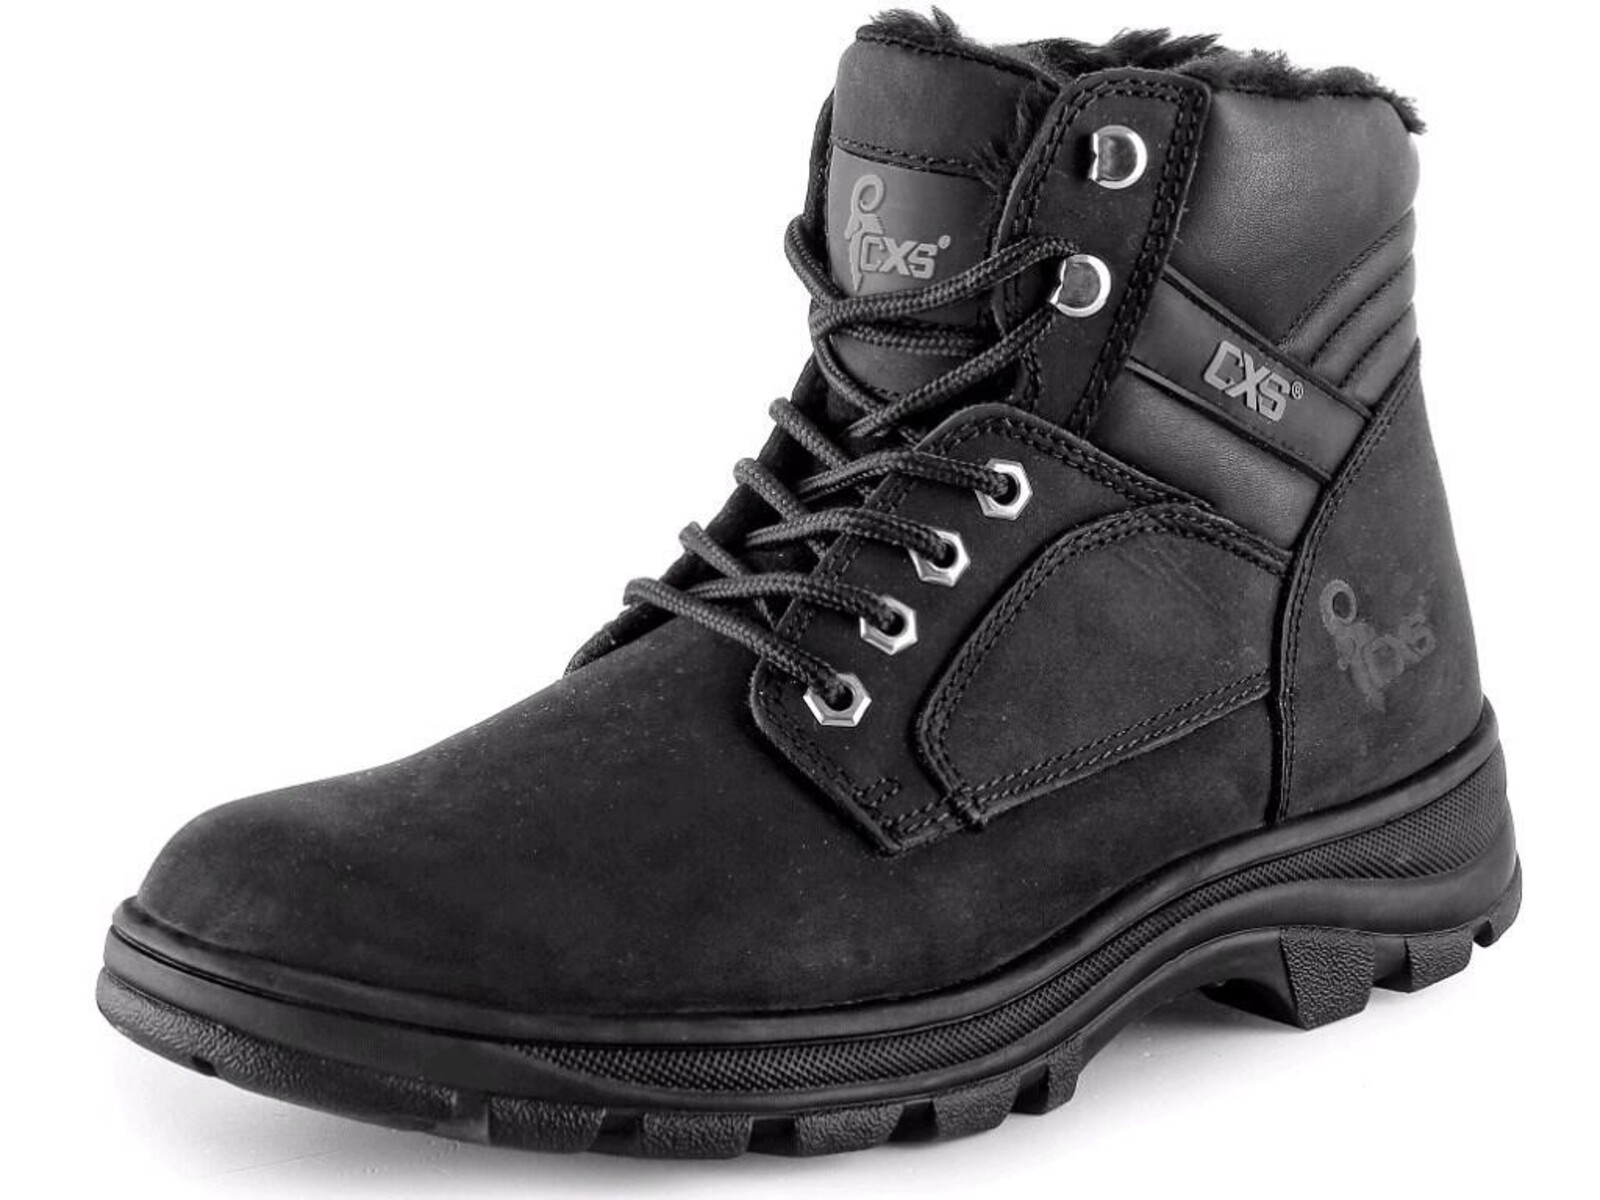 Zimná členková obuv CXS Road Industry FO E CI SRA - veľkosť: 37, farba: čierna